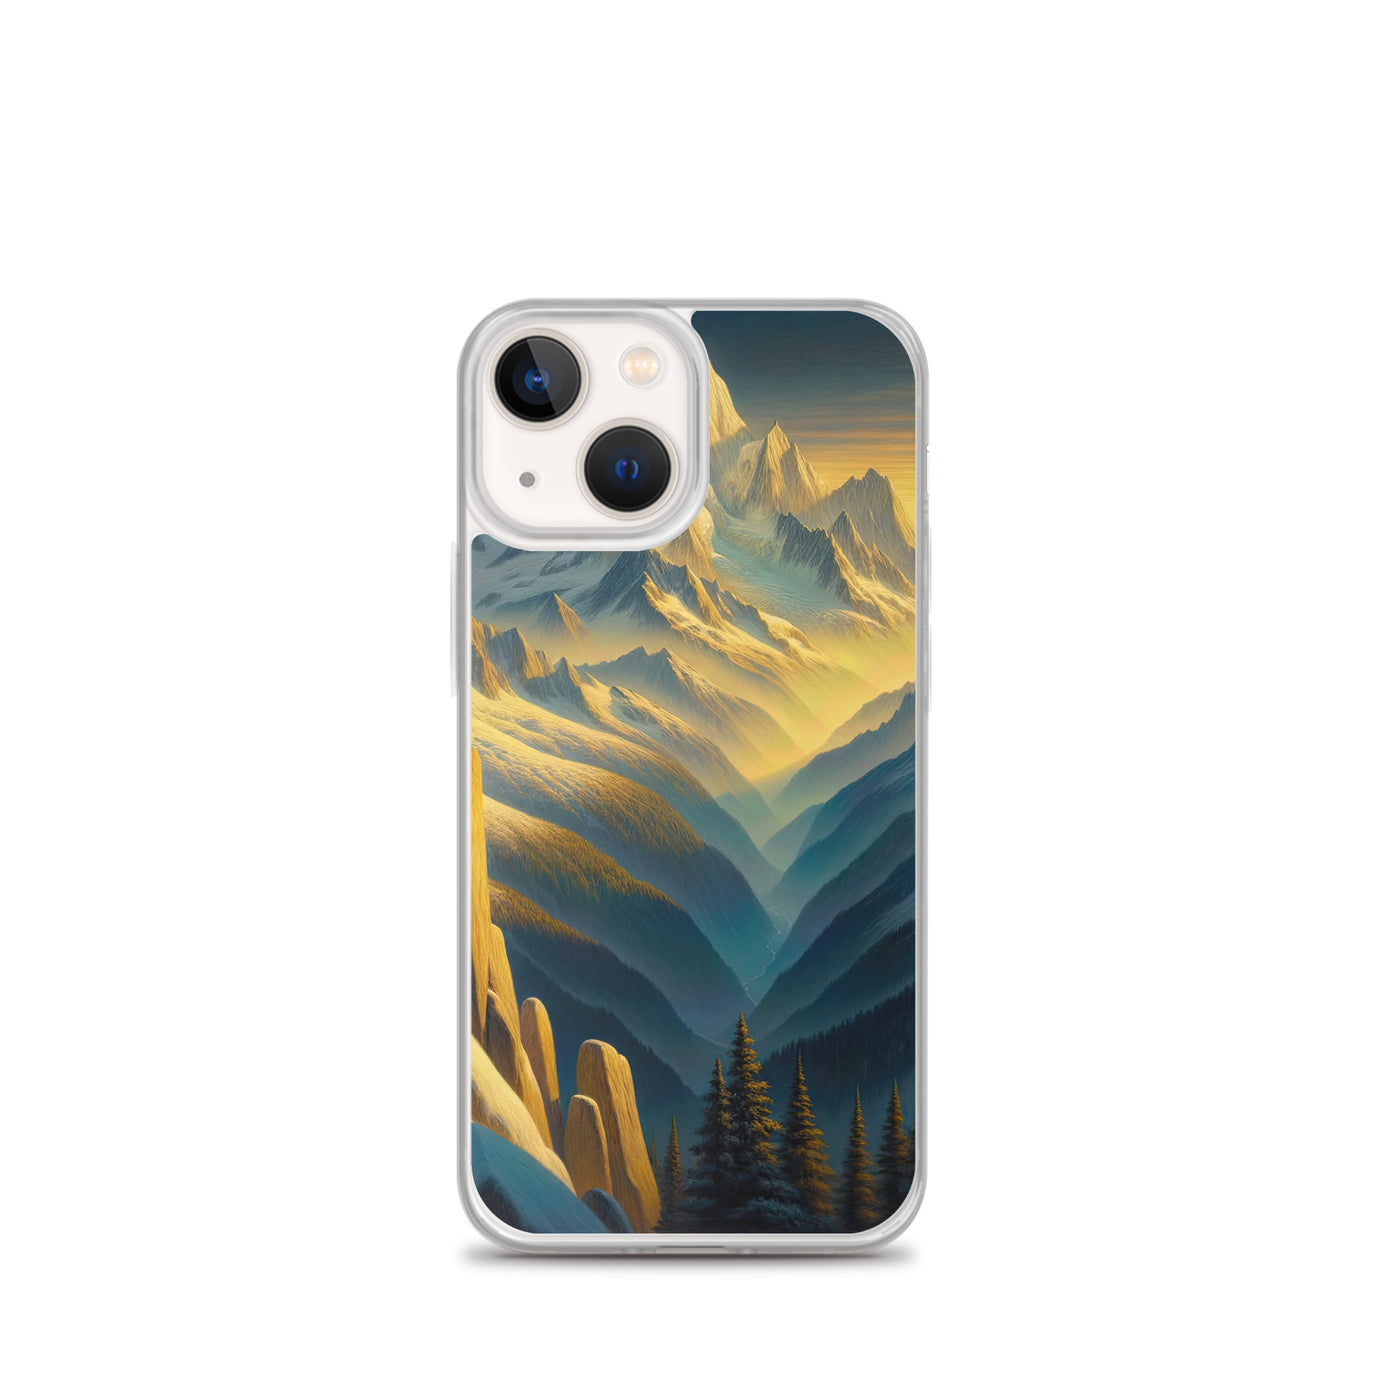 Ölgemälde eines Wanderers bei Morgendämmerung auf Alpengipfeln mit goldenem Sonnenlicht - iPhone Schutzhülle (durchsichtig) wandern xxx yyy zzz iPhone 13 mini